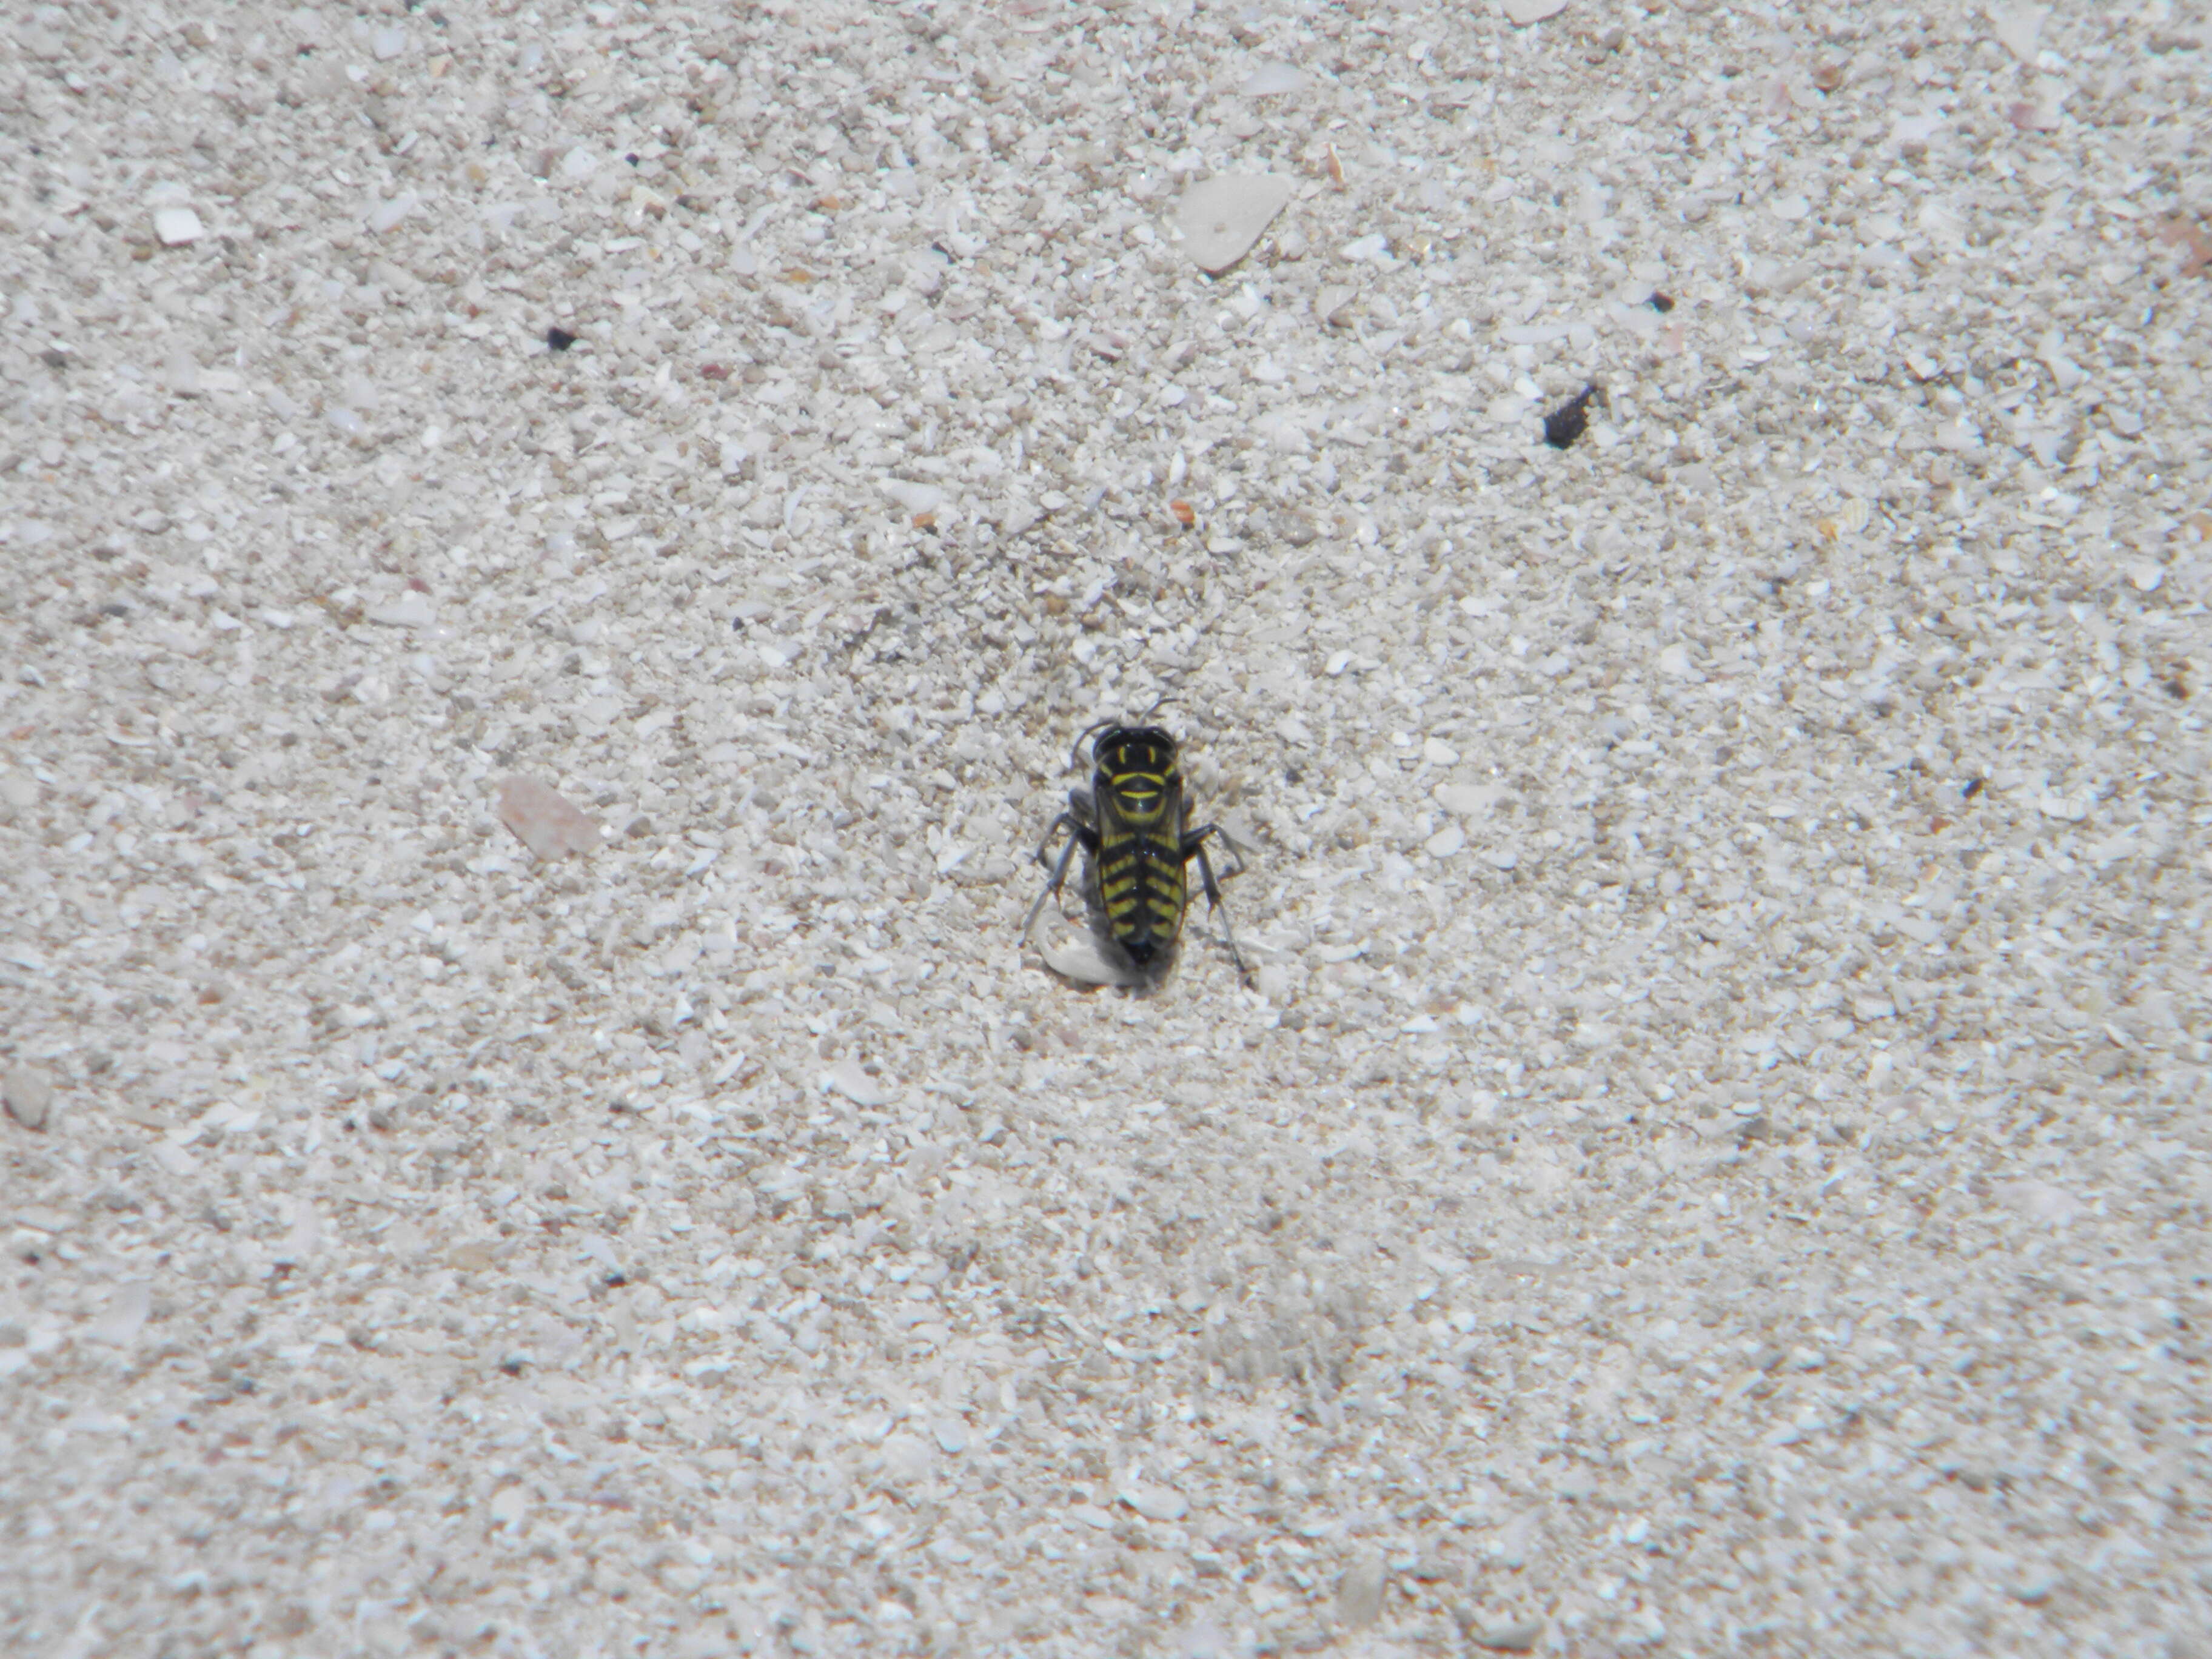 Image of Sand Wasps